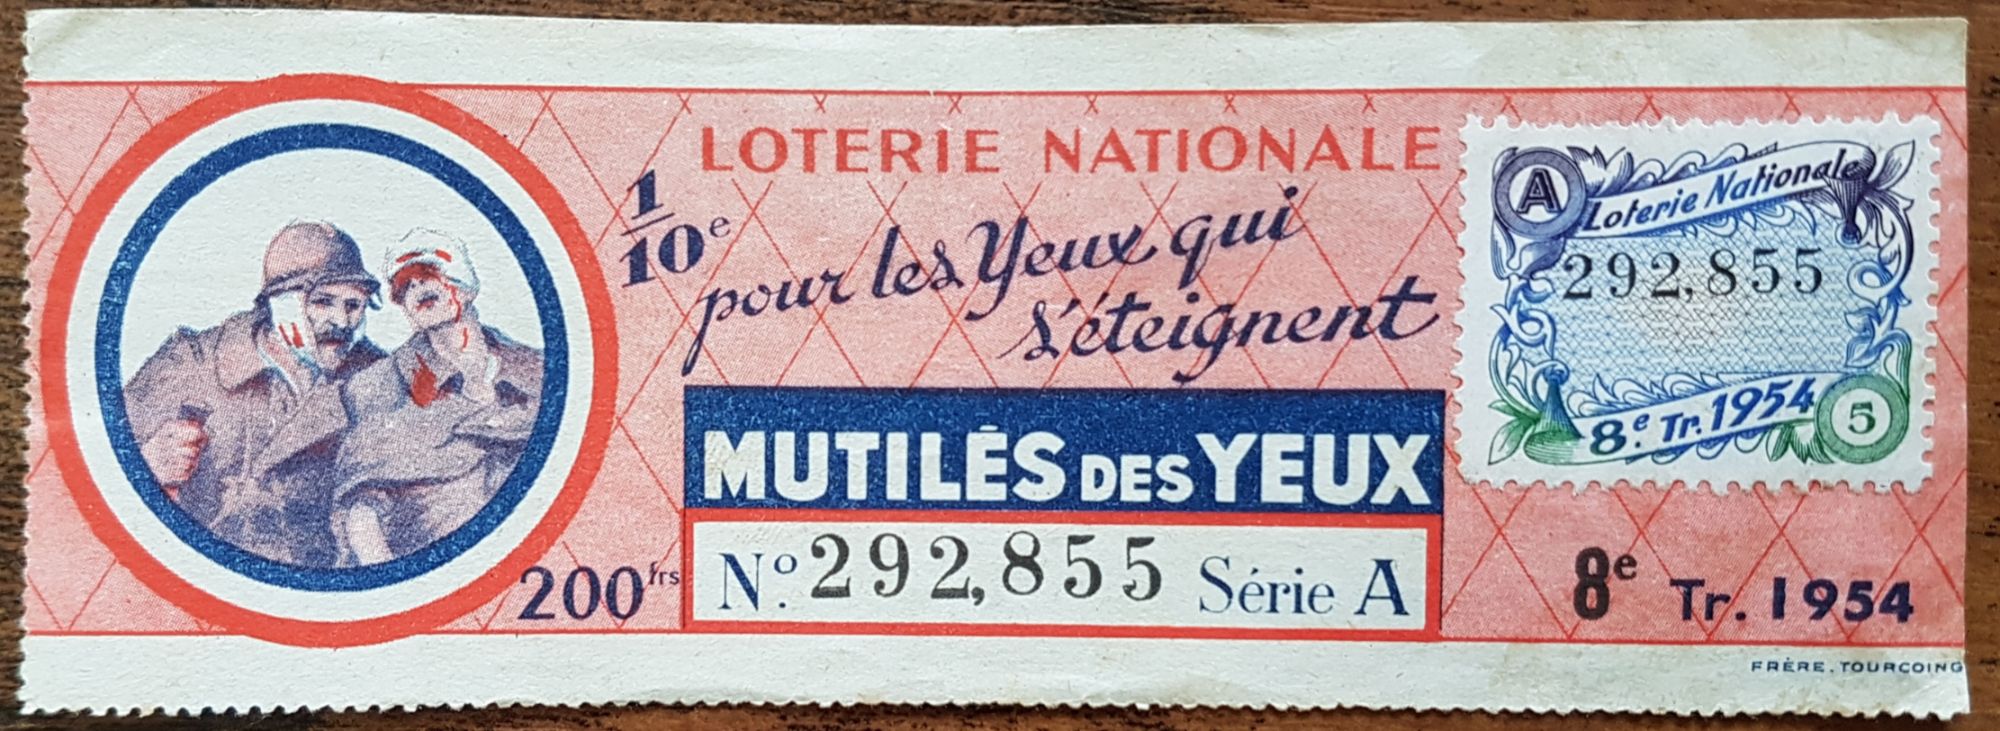 Billet de Loterie Nationale, Mutilés des yeux et croix de guerre